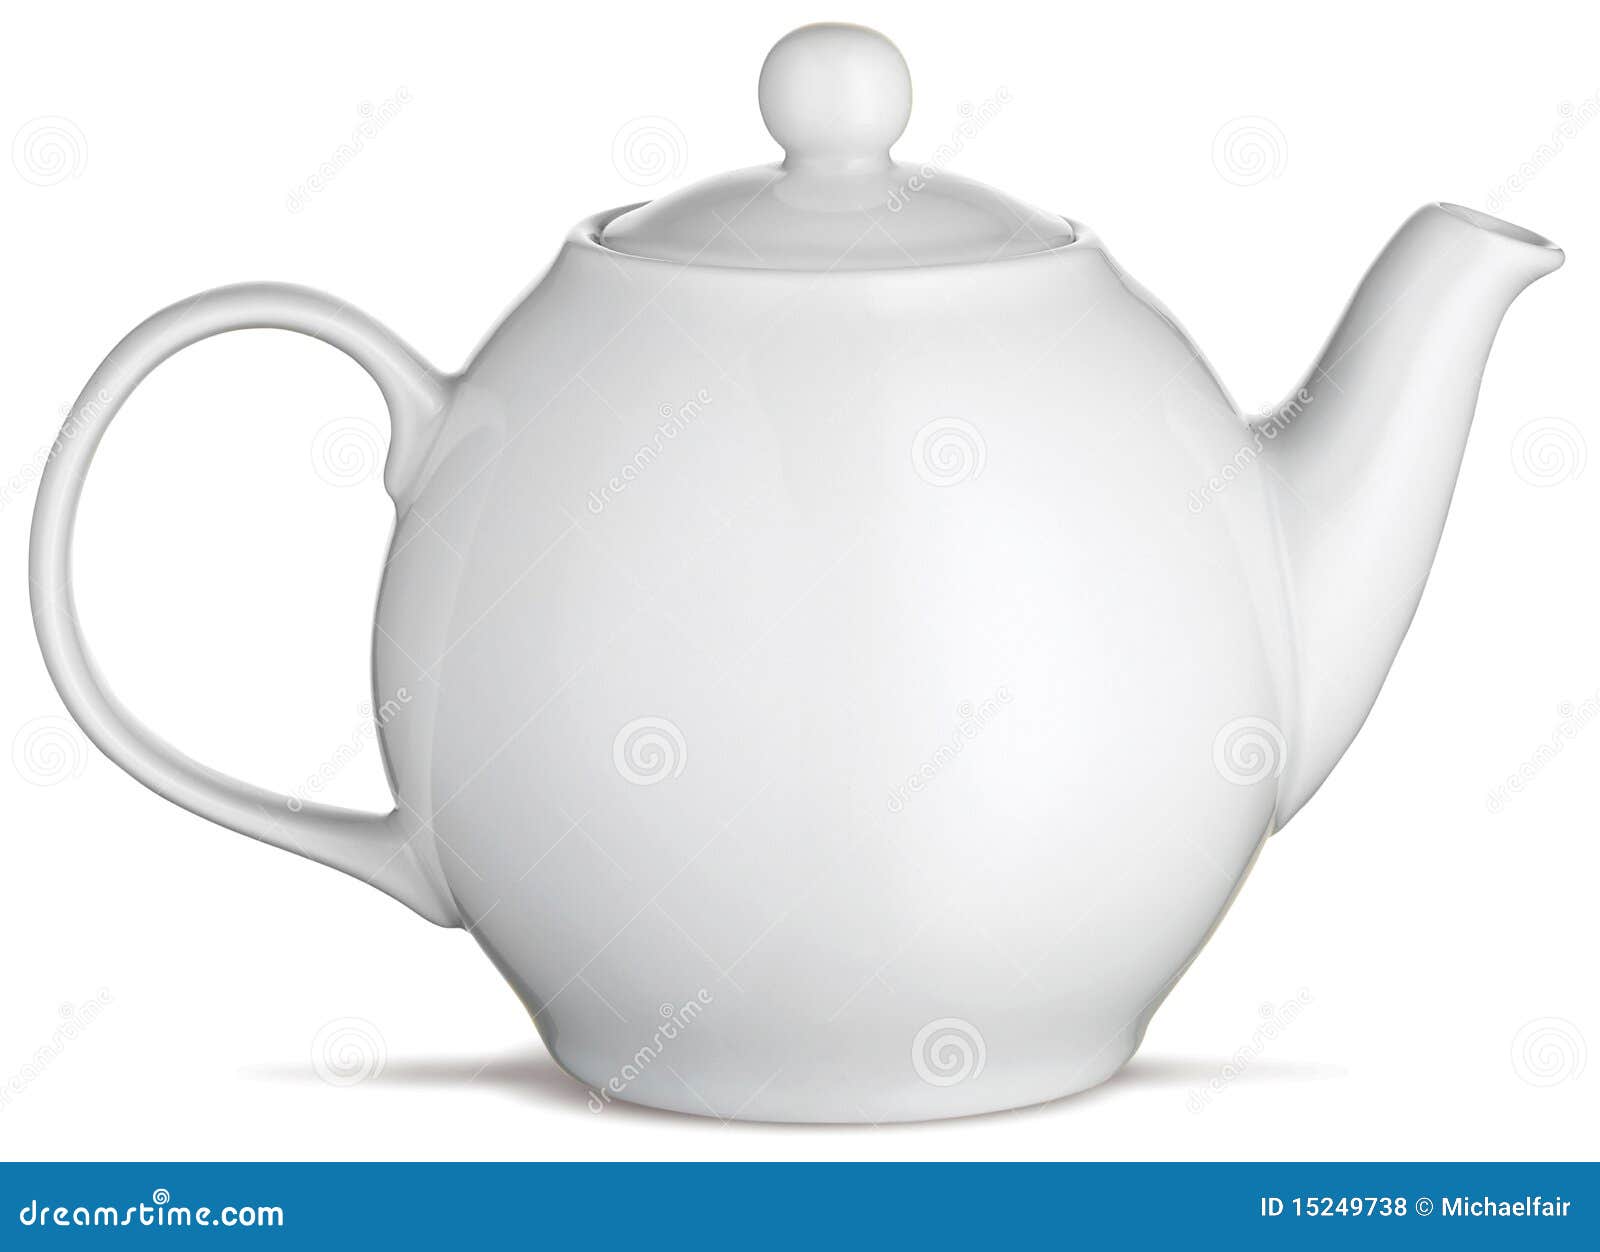 white china tea pot teapot on a white background